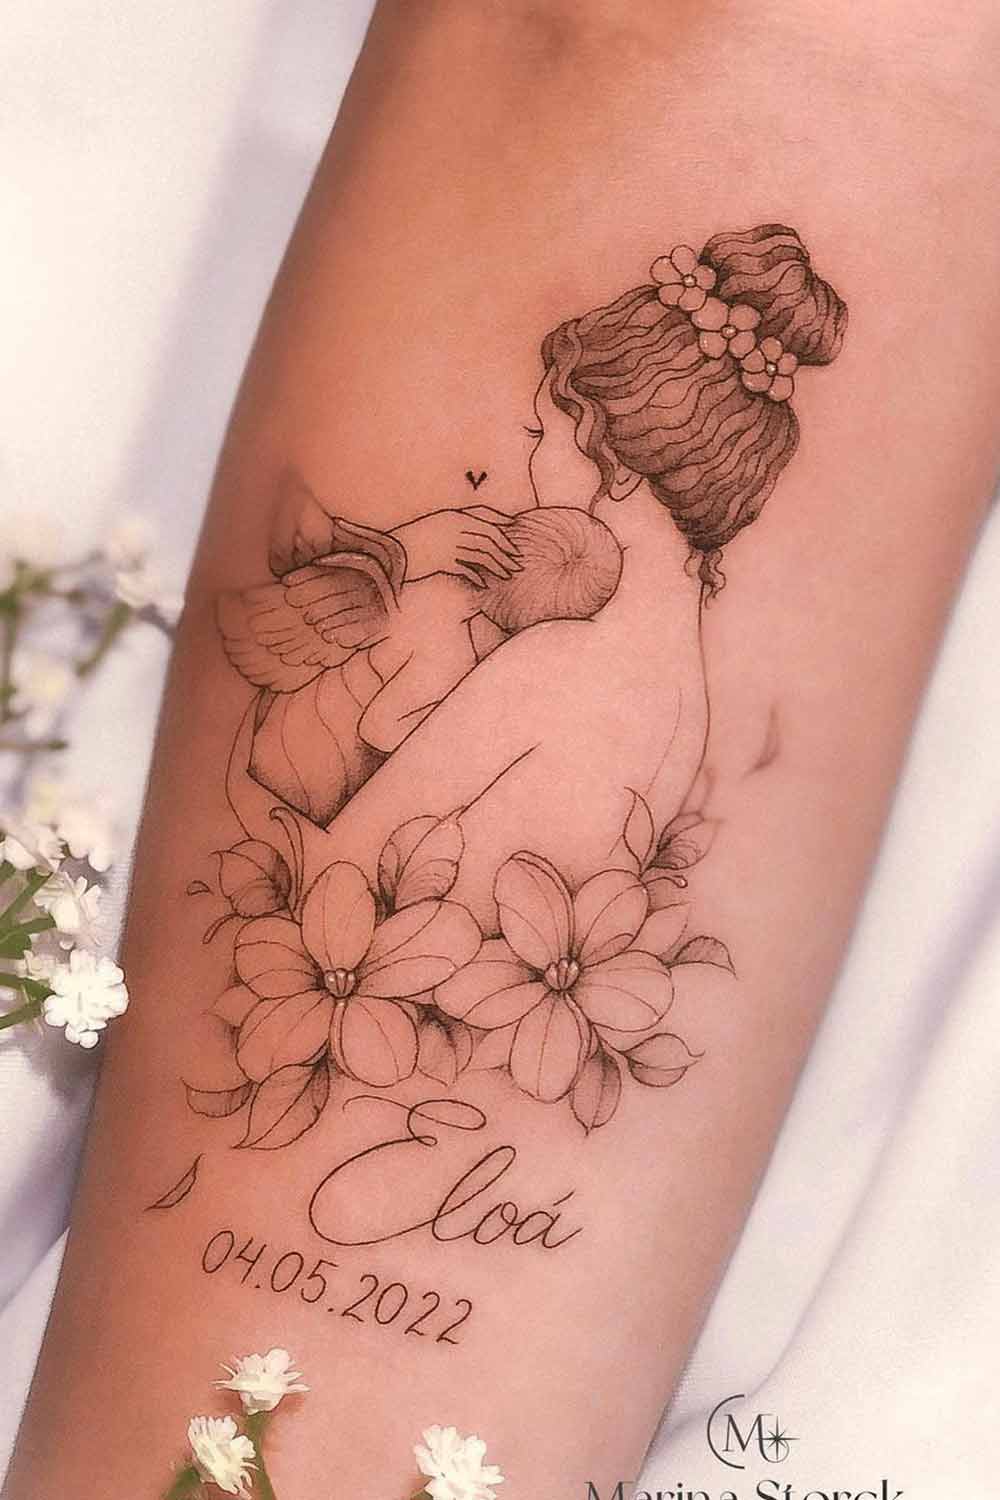 tatuagem-em-homenagem-ao-filho-que-se-foi 